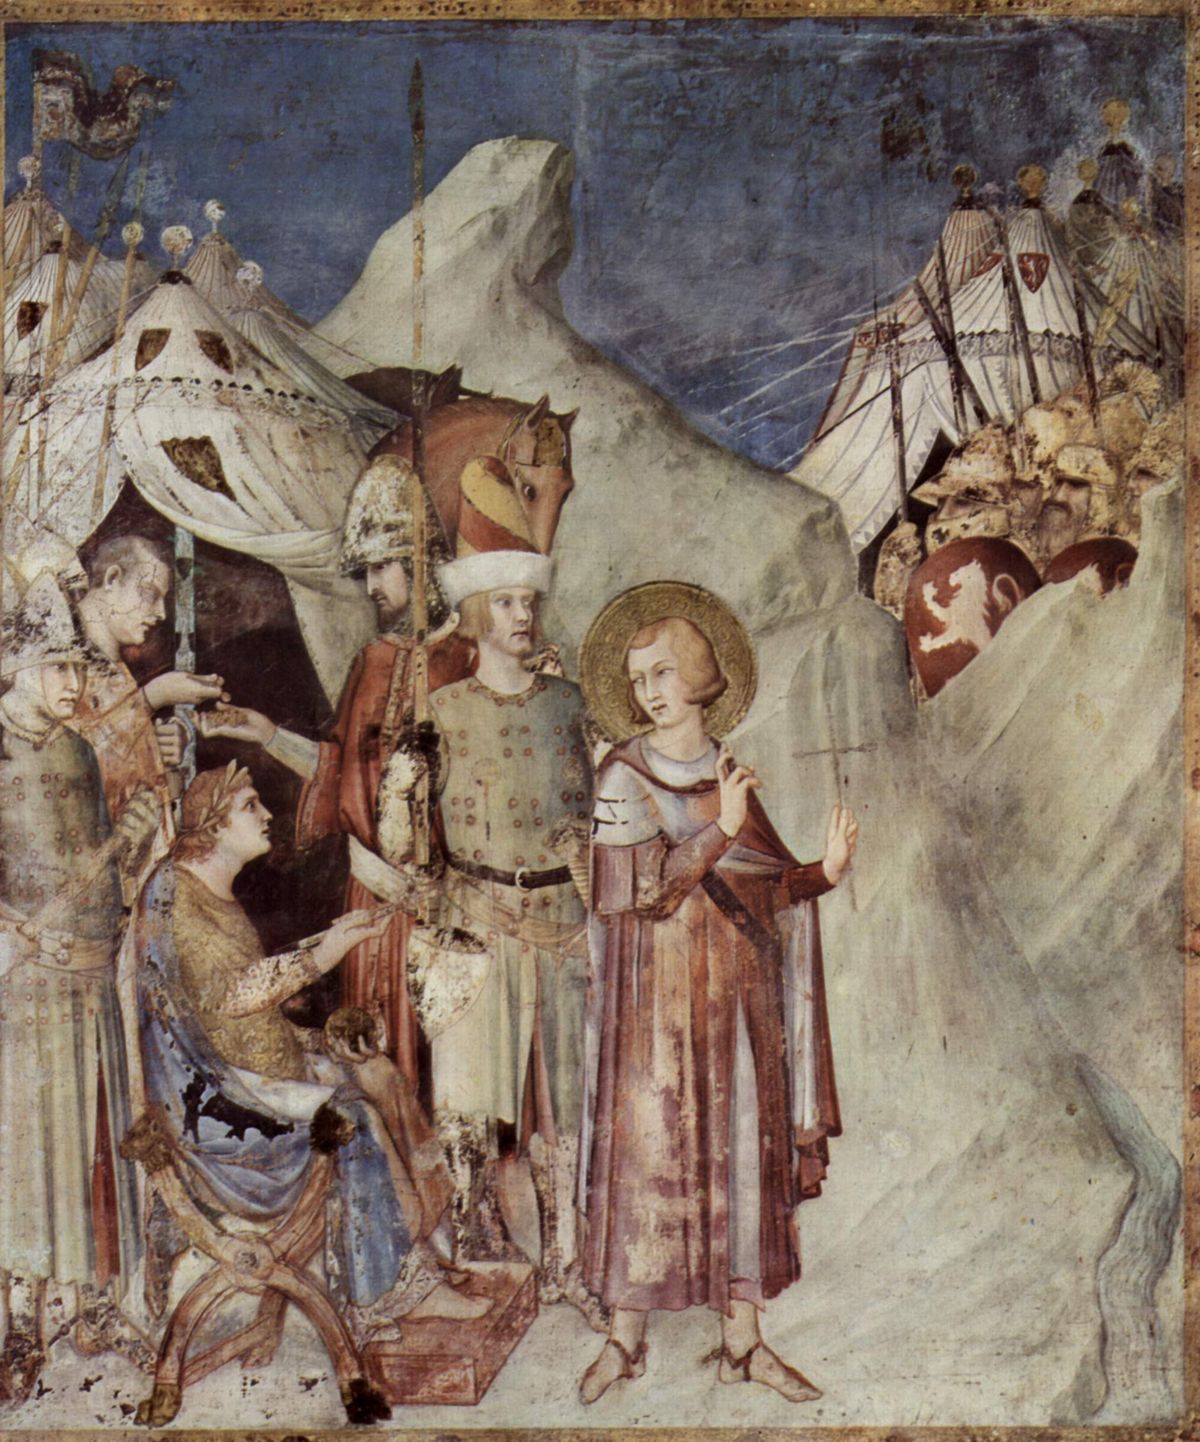 Szent Márton megkeresztelkedése után kilép a hadseregből, mondván: „Krisztus katonája vagyok, így nem harcolhatok!” Simone Martini freskója. (Forrás: Wikipedia.com)